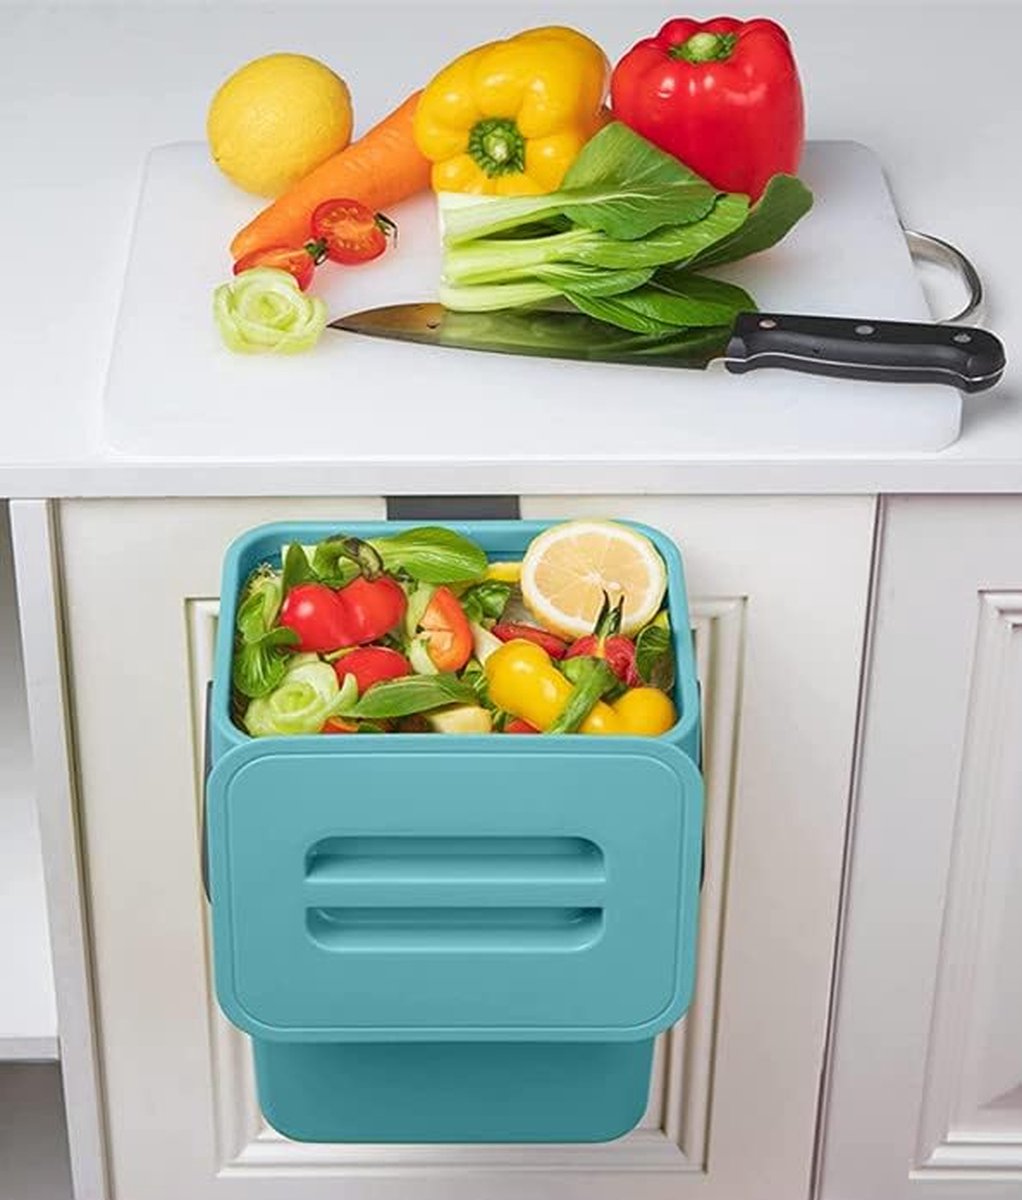 Kleine compostbak voor keuken -1,3 gallons/5L prullenbak voor keuken, aanrecht containerbak met deksel voor vuilniscomposter keuken-indoor prullenbak voor keuken (blauw)